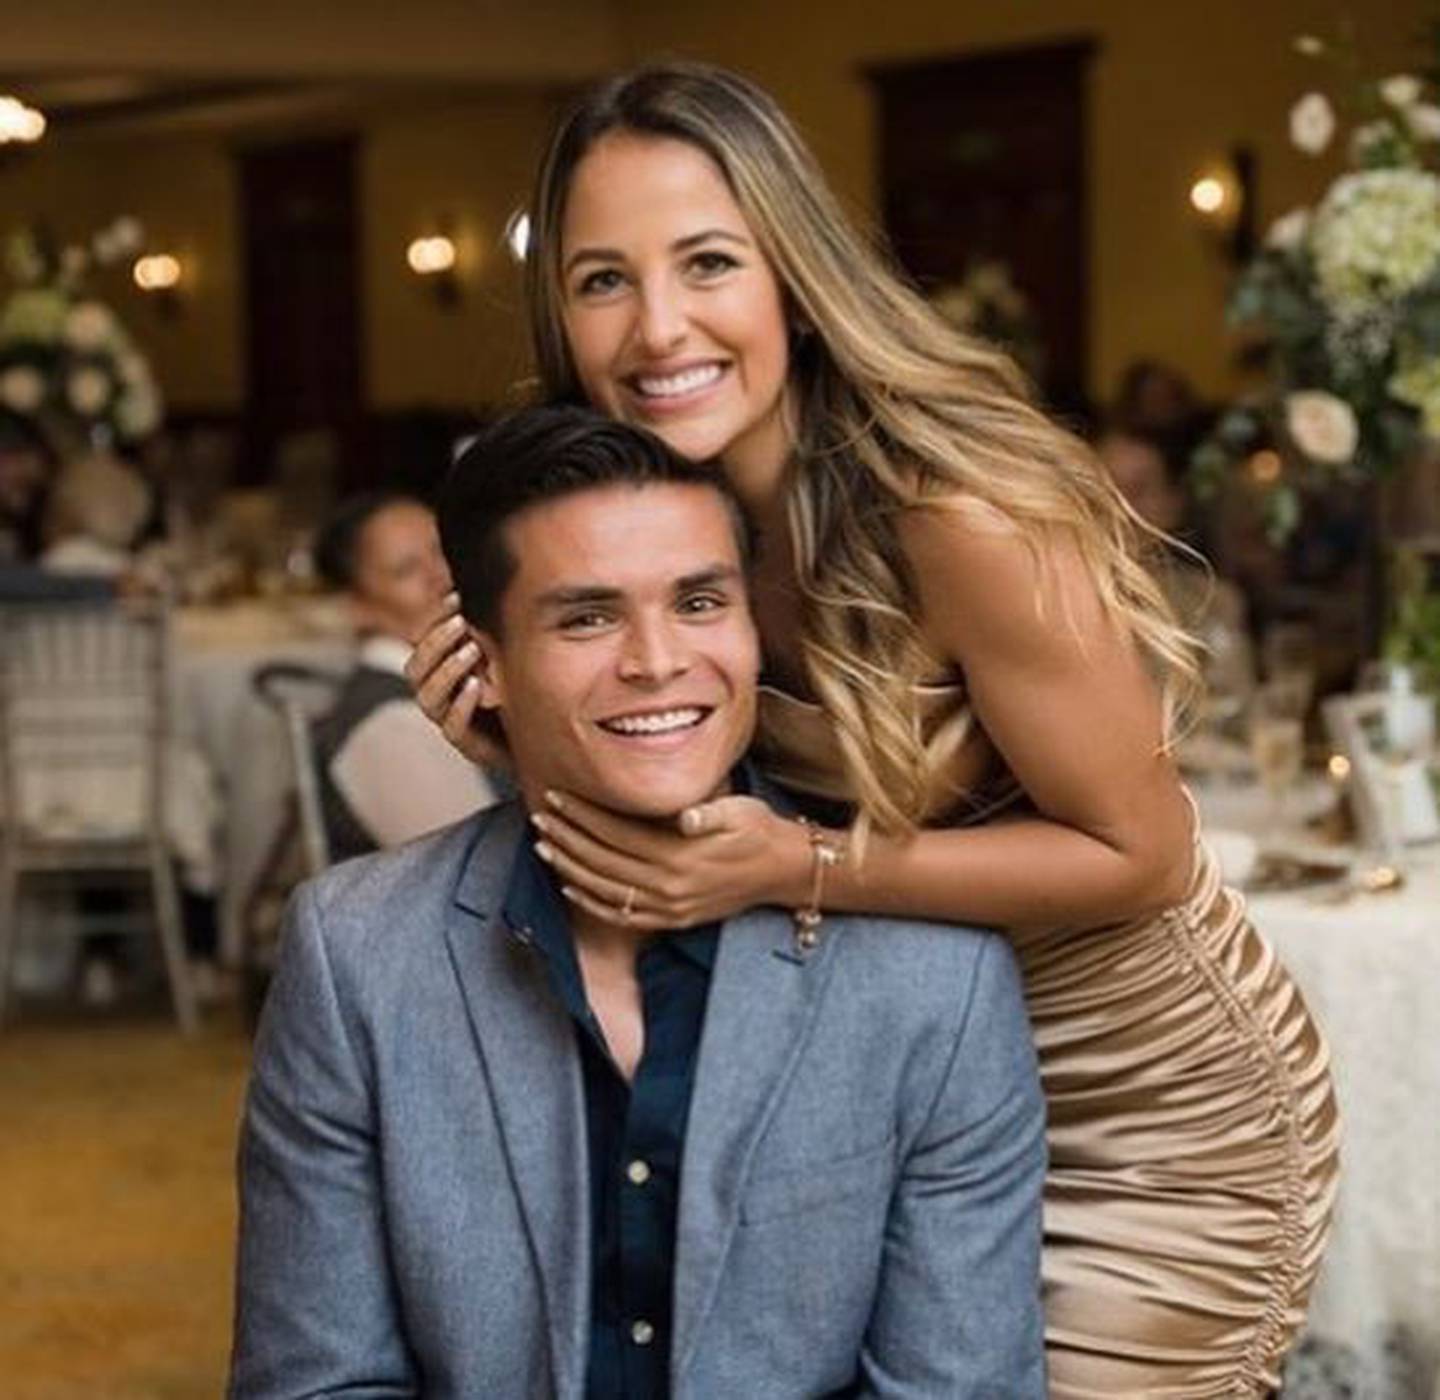 Francisco Rodríguez y su prometida, Lina Arciniegas. Instagram.